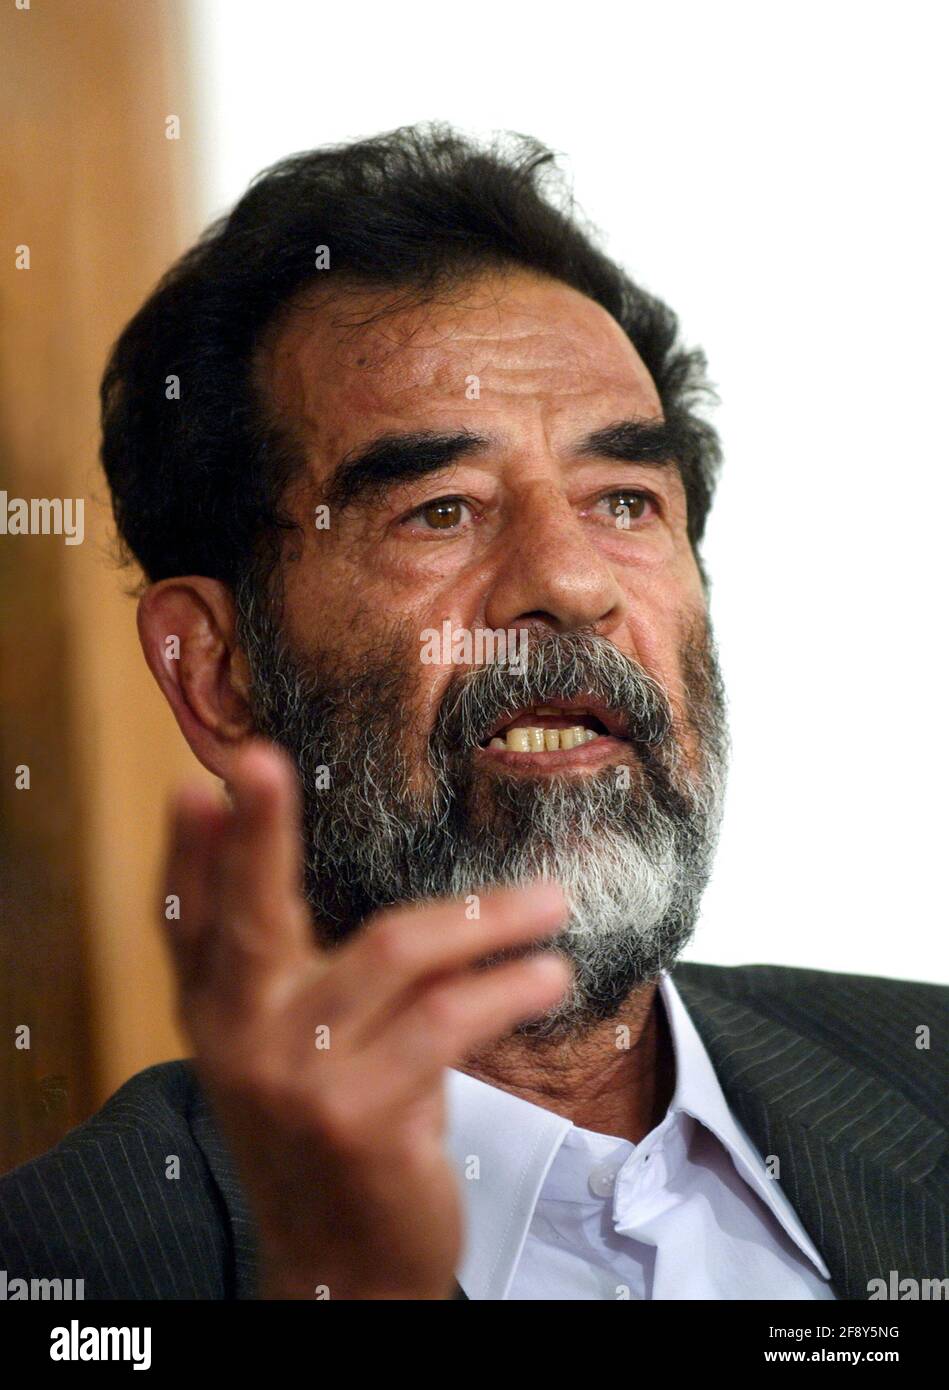 Saddam Hussein. Porträt des ehemaligen irakischen Präsidenten Saddam Hussein Abd al-Majid al-Tikriti 1937-2006). Foto DER US-Armee, das er nach seiner Gefangennahme in Tikrit, Irak, vor einem Tribunal aufgenommen hatte. Foto aus dem Jahr 2004. Stockfoto